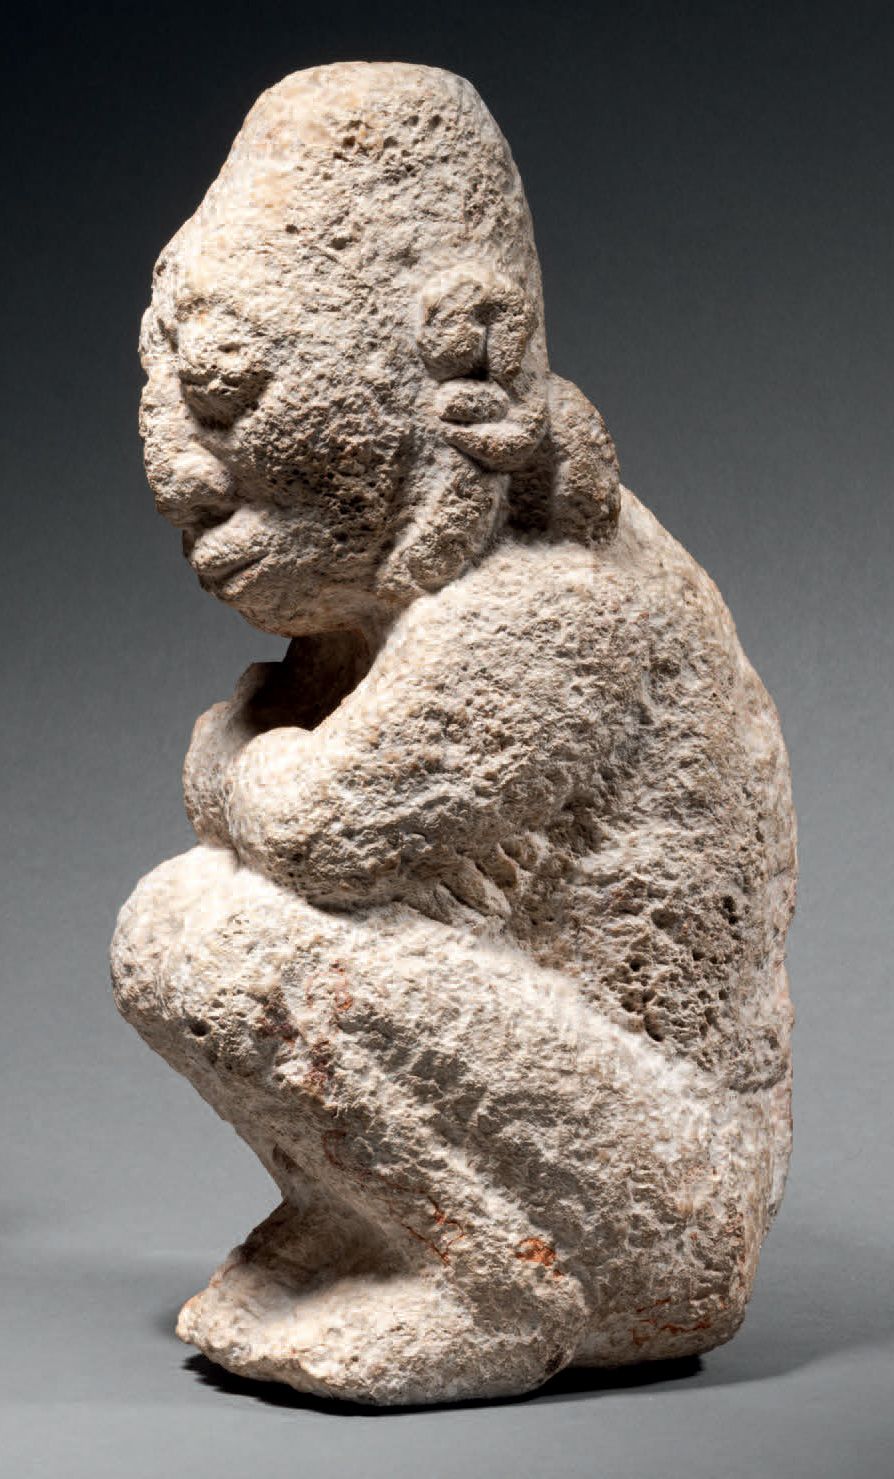 Null Ɵ 蹲着的俘虏
马亚文化，墨西哥
最近的古典主义，公元600-900年
灰白色石灰石
高27厘米
出处：
- 美国私人收藏，1989年获得
- Mar&hellip;